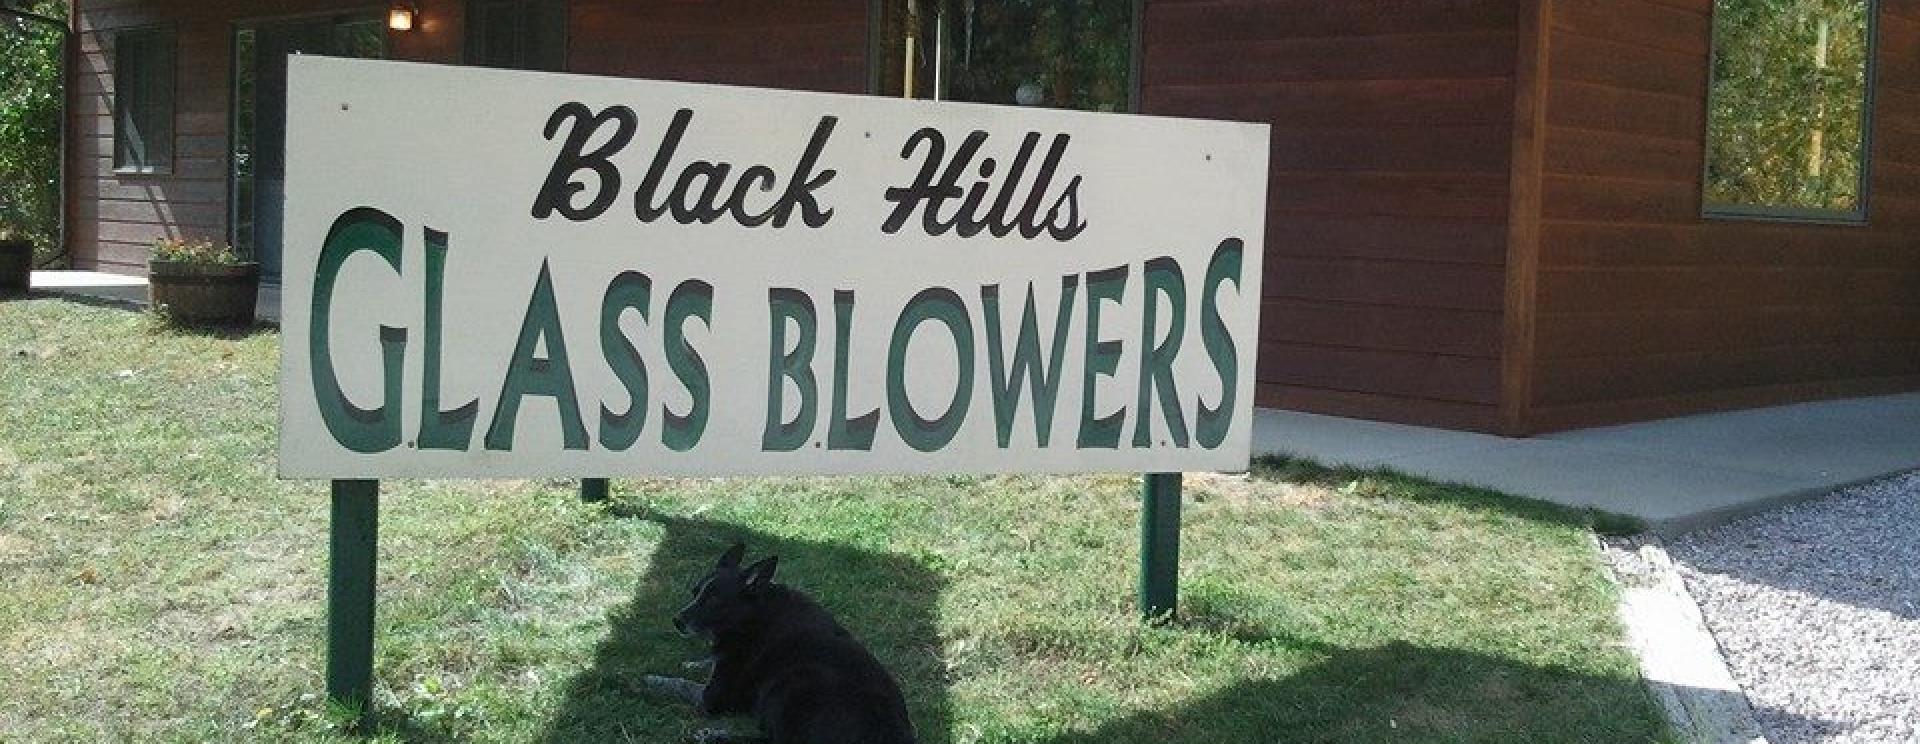 Black Hills Glass Blowers